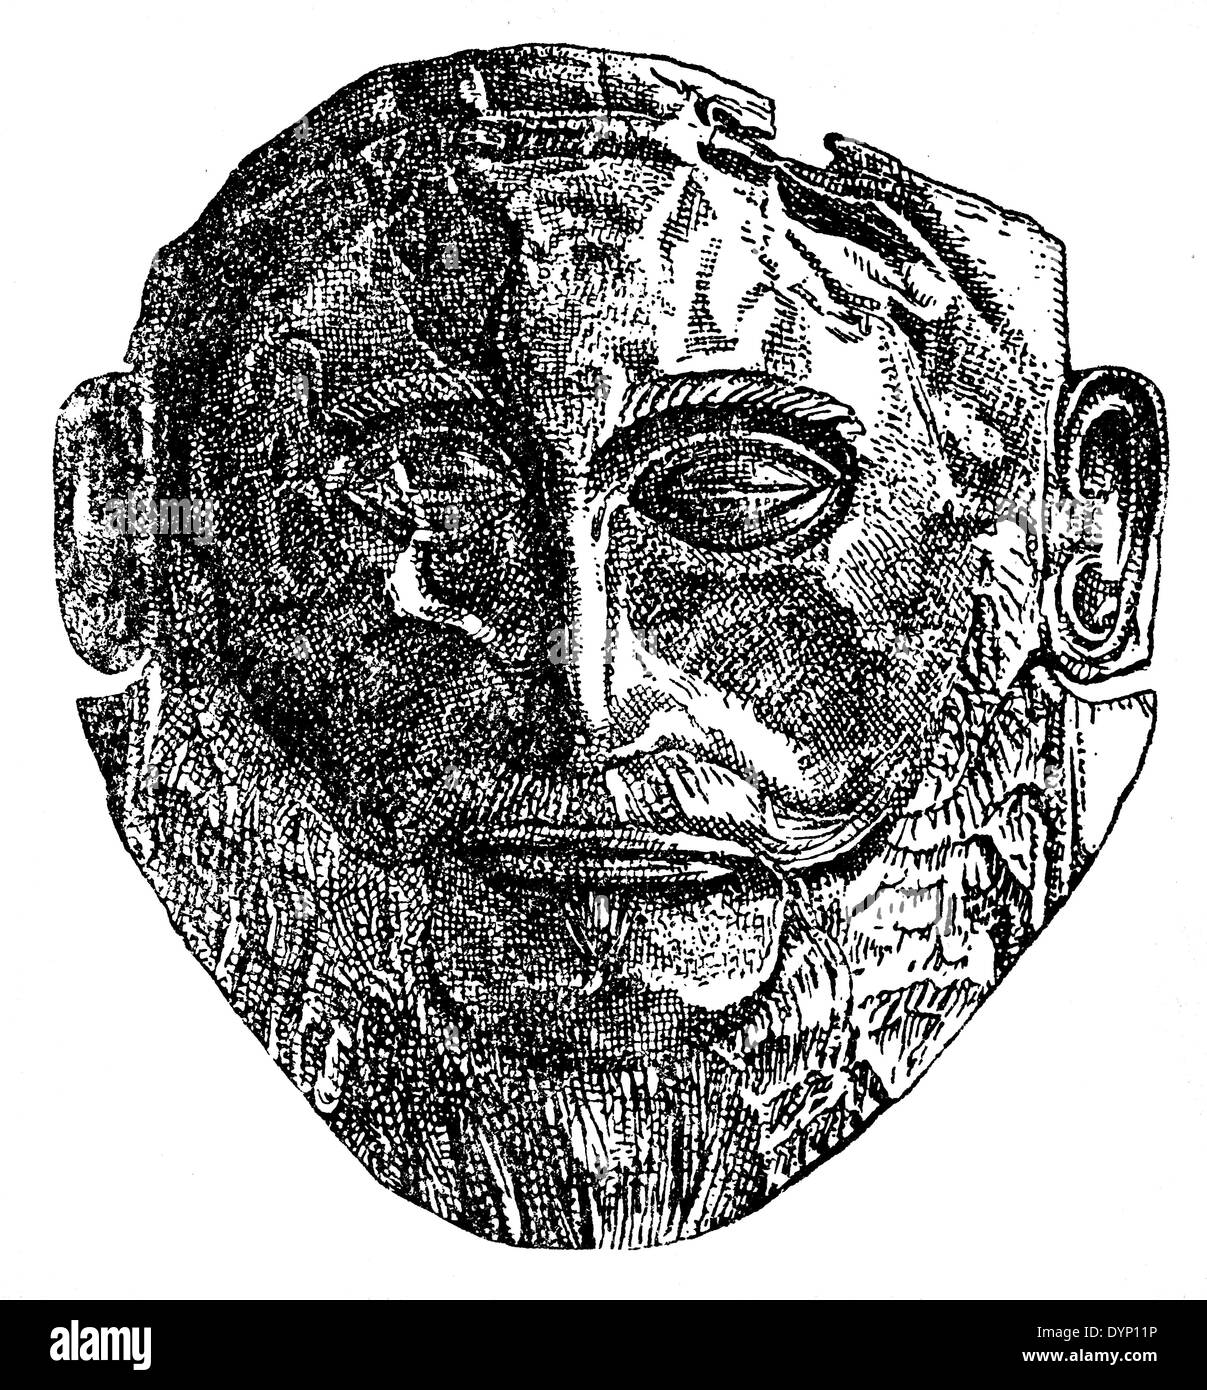 Le grec ancien masque funéraire mycénien, 'Mask' d'Agamemnon, illustration de l'Encyclopédie Soviétique, 1938 Banque D'Images